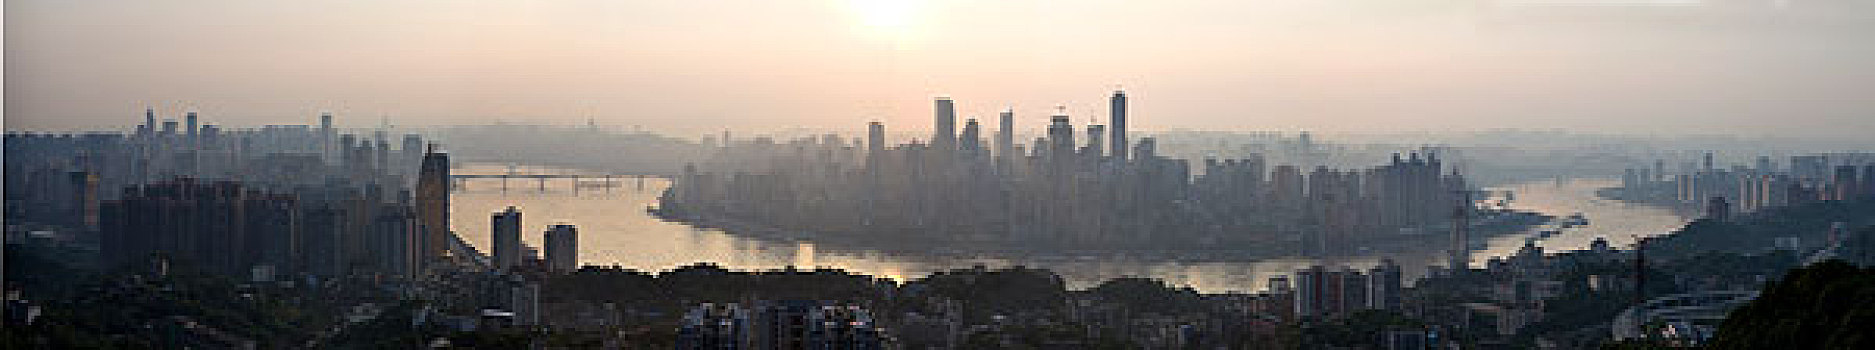 重庆城市全景图